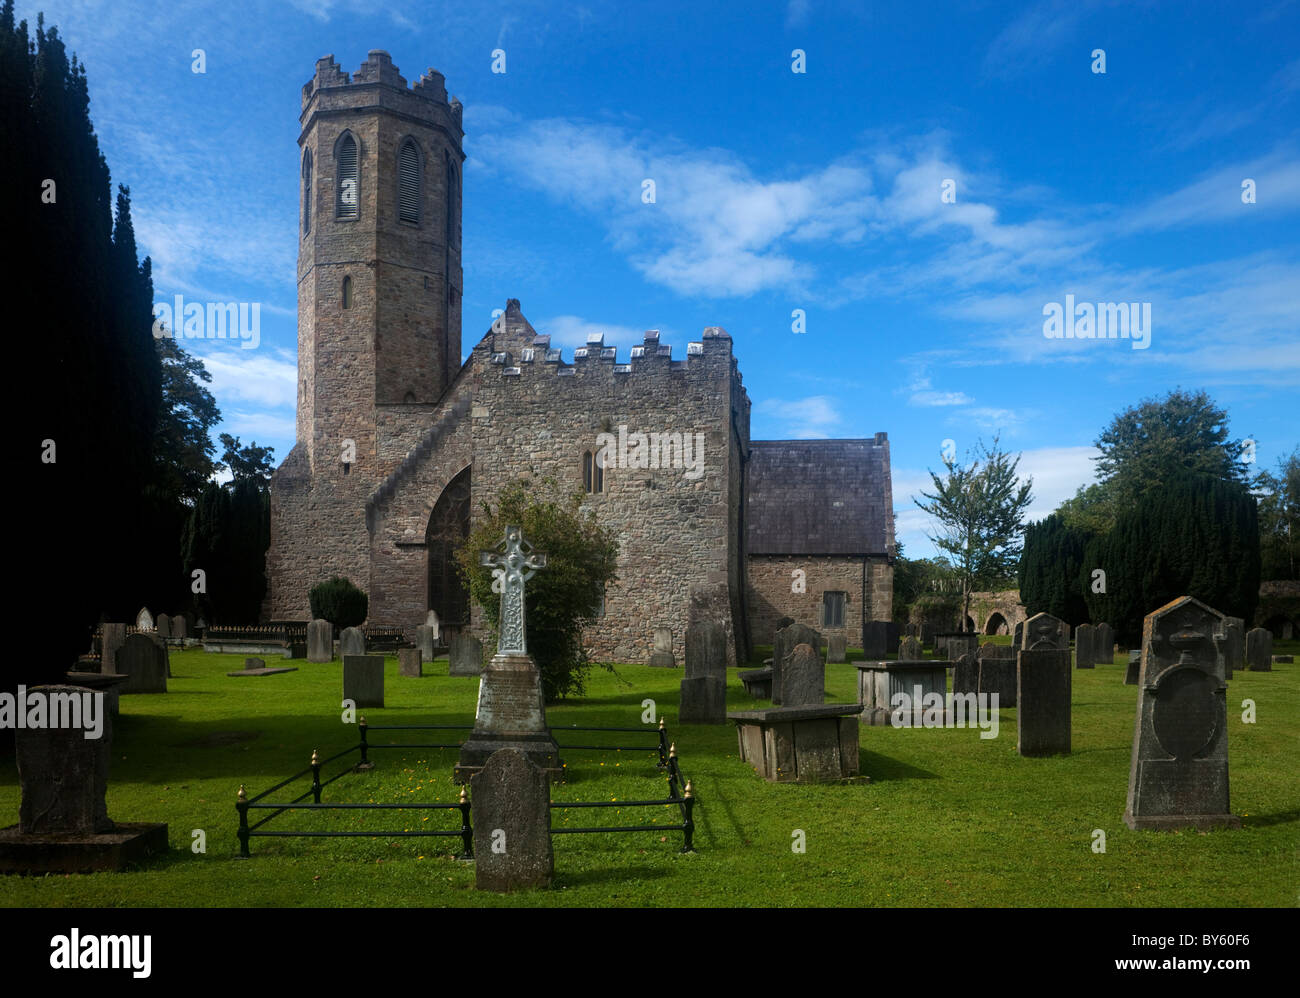 St Mary's Church (1836), Clonmel, County Tipperary, Ireland Stock Photo